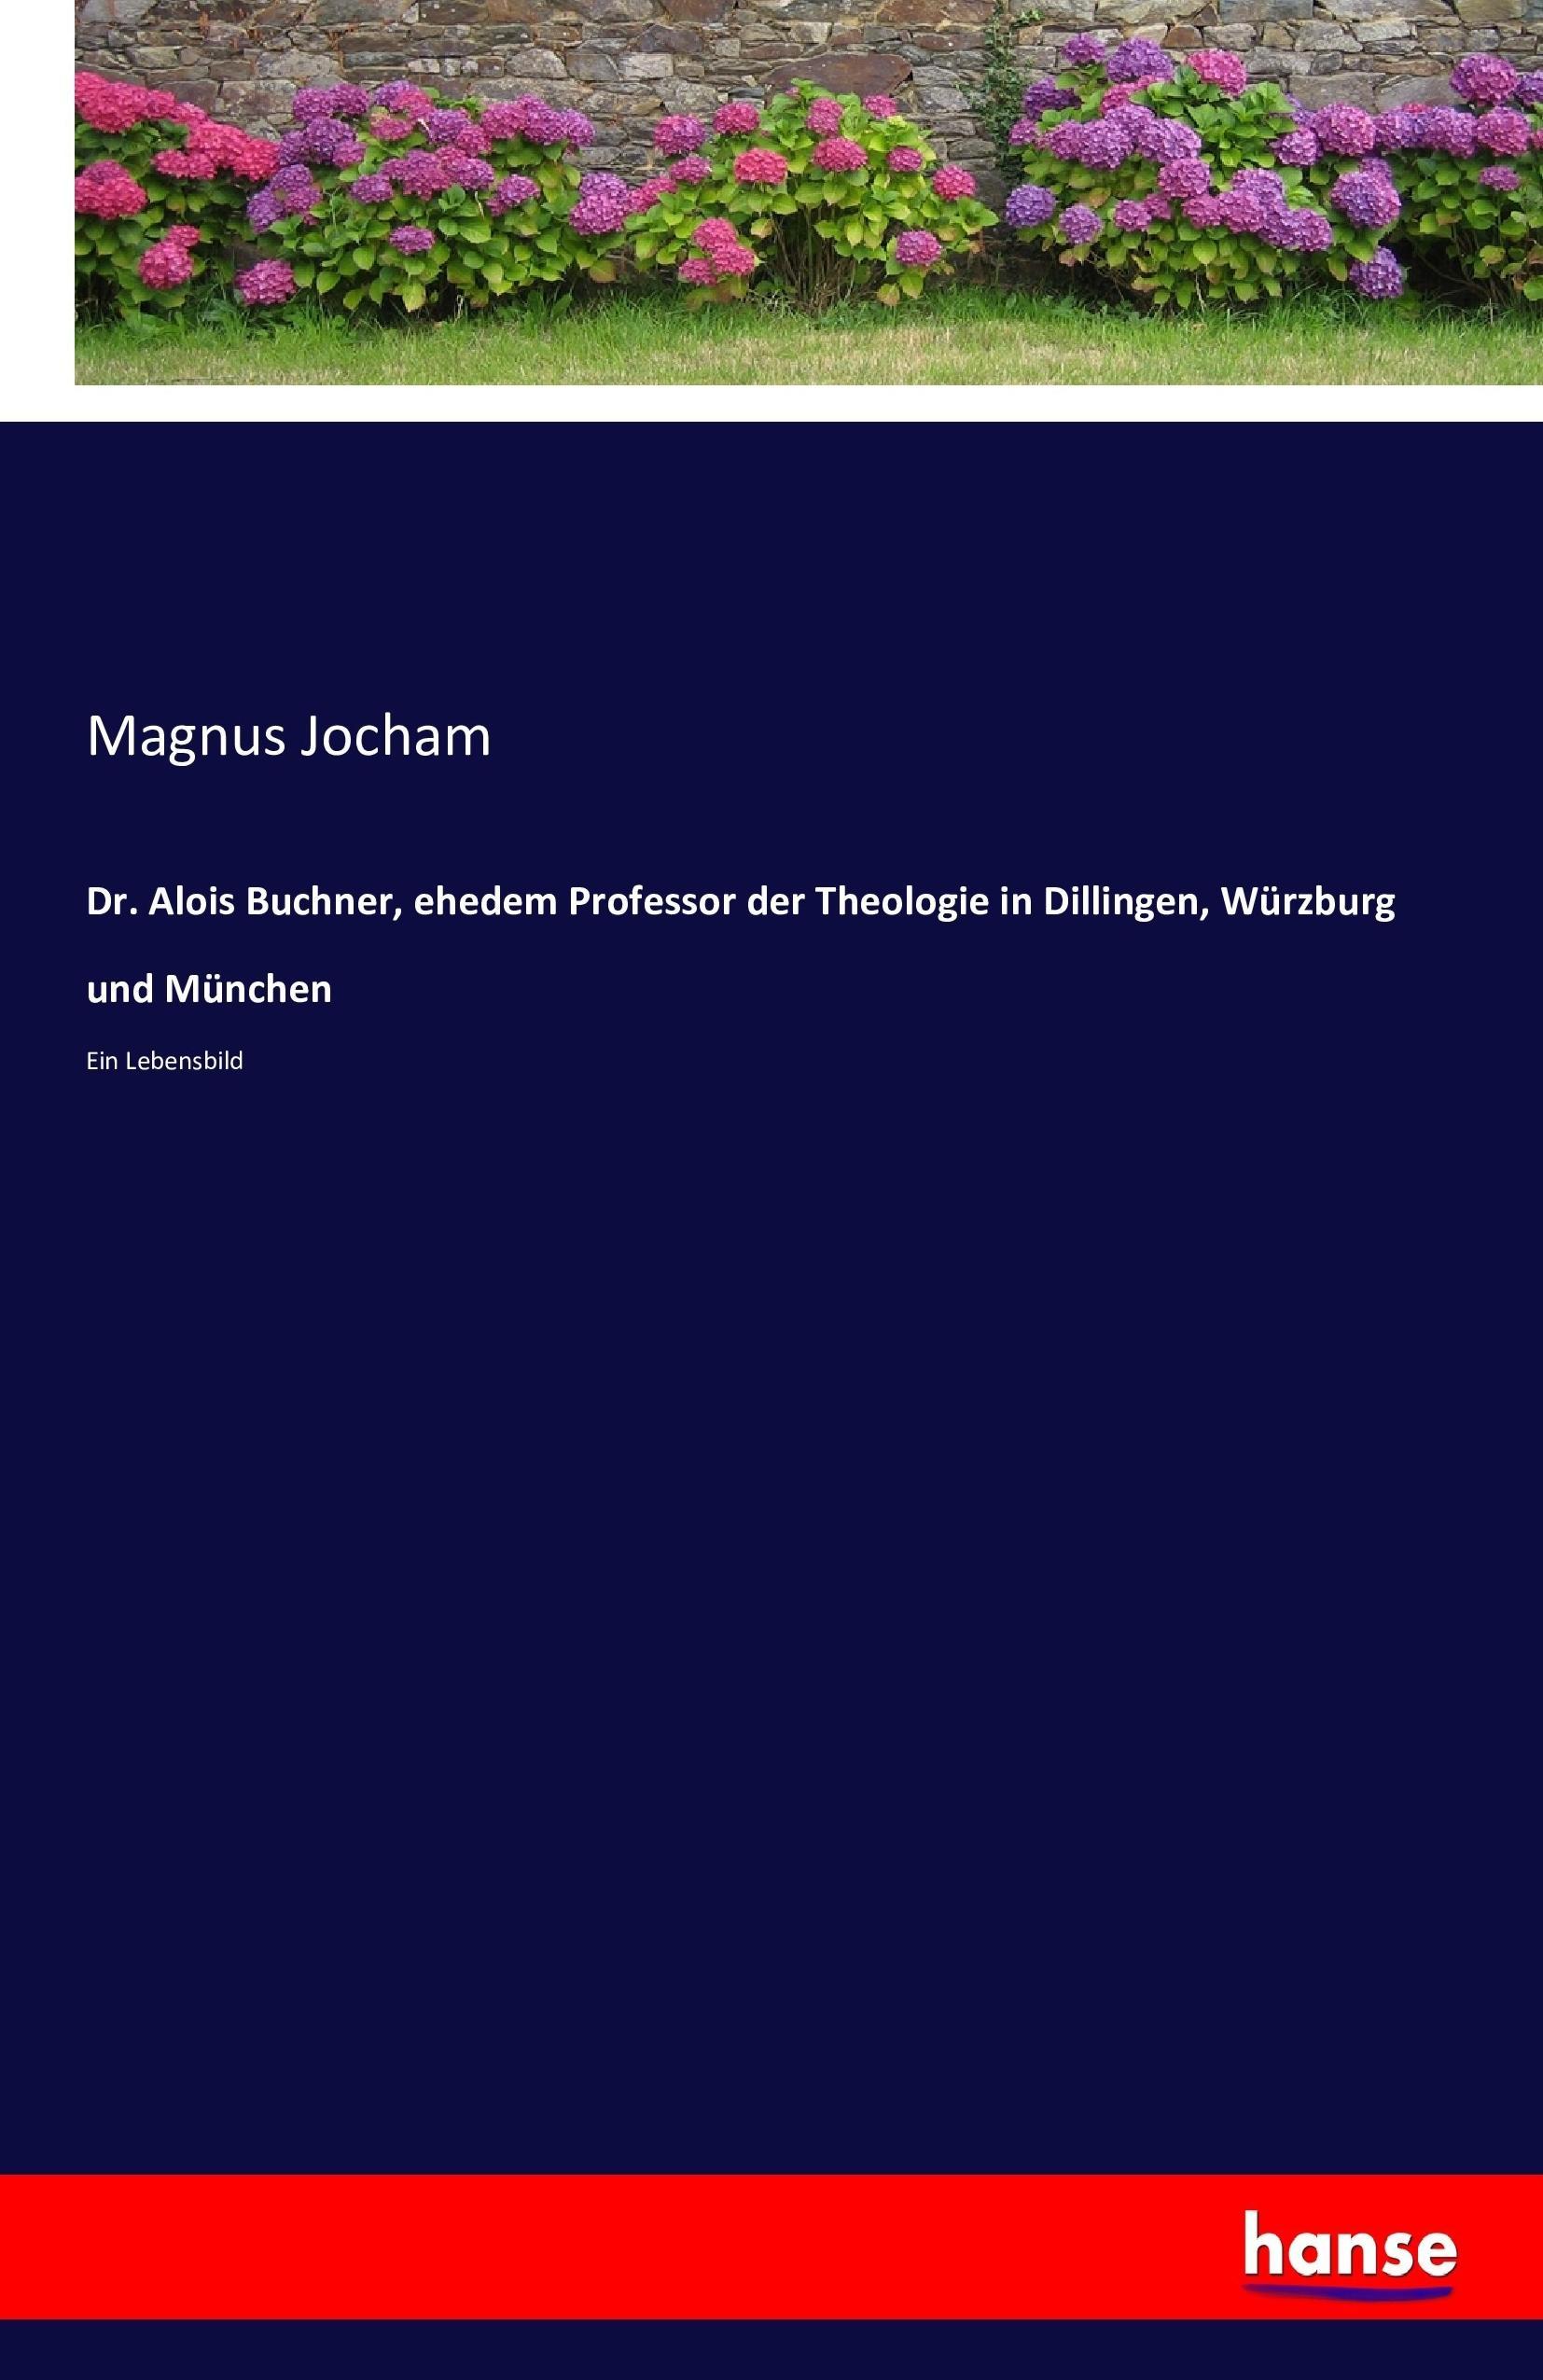 Dr. Alois Buchner, ehedem Professor der Theologie in Dillingen, Wuerzburg und Muenchen - Jocham, Magnus